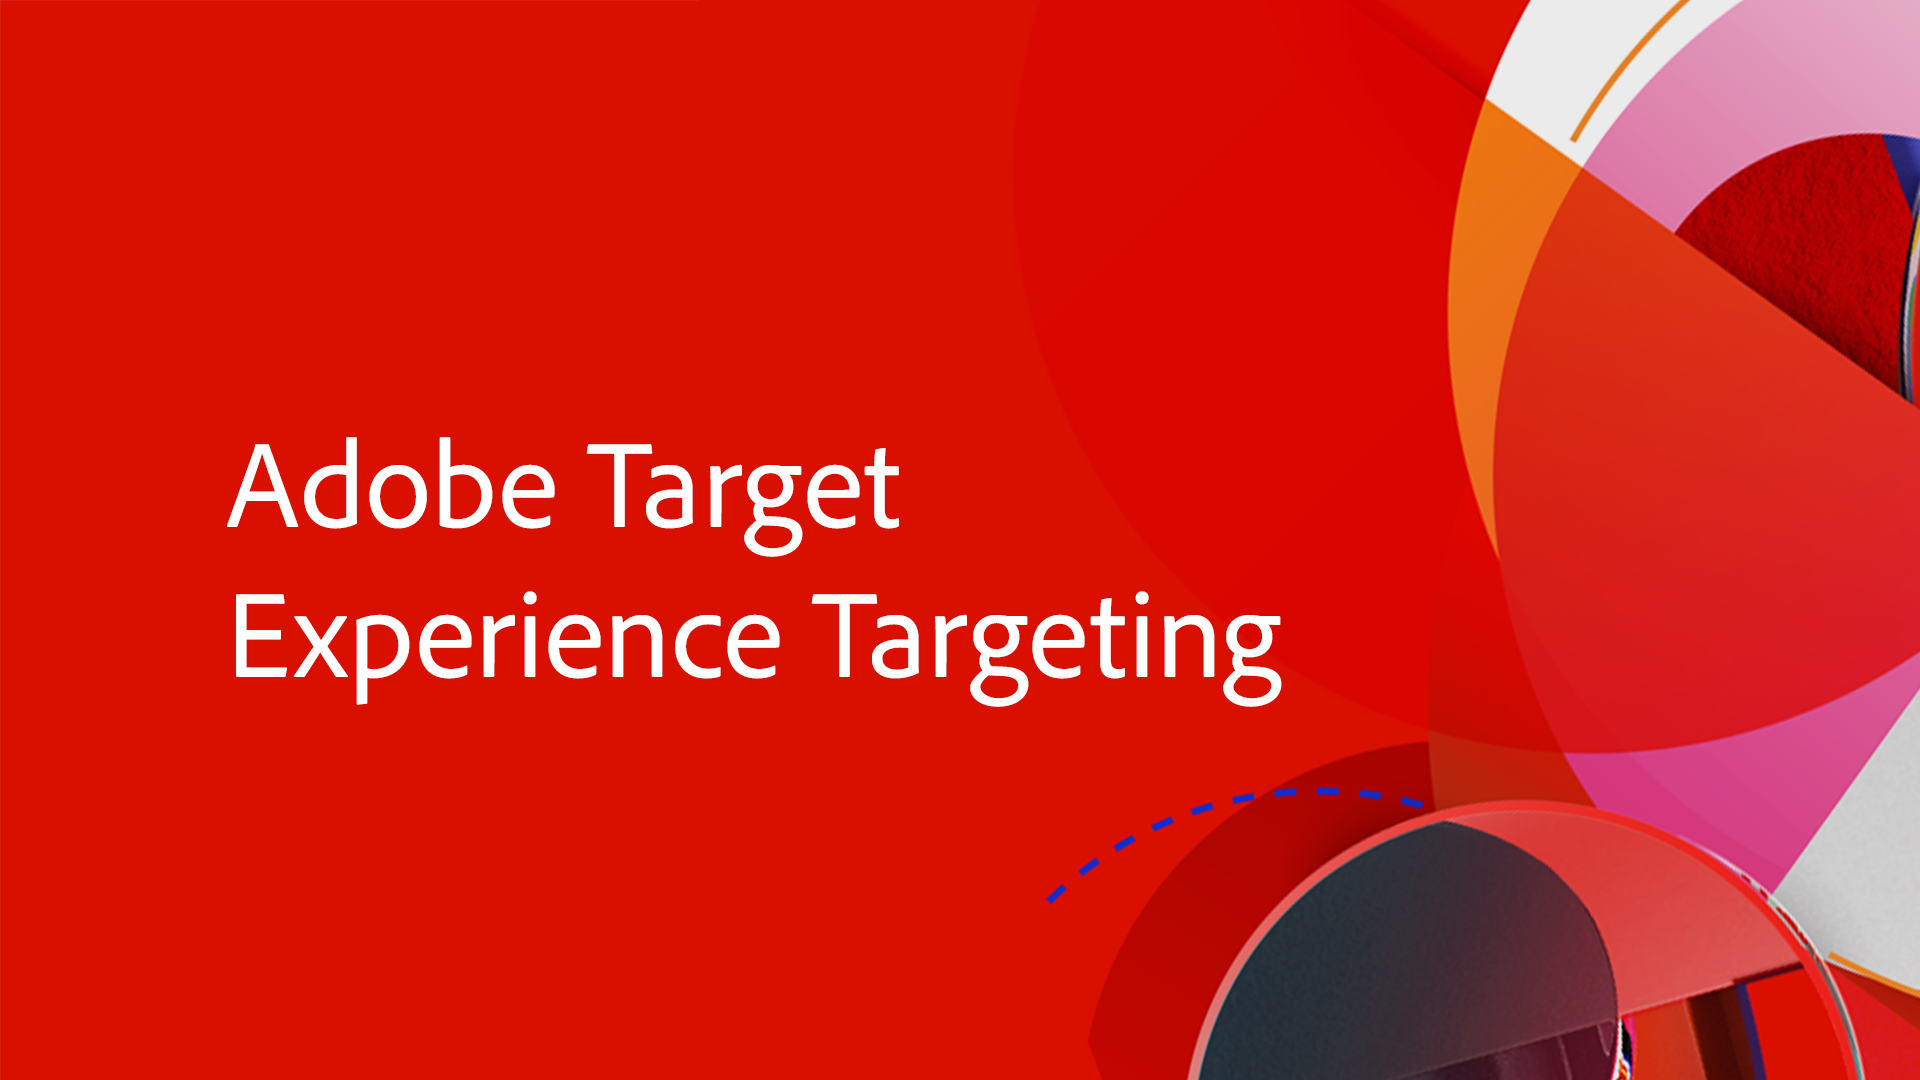 Adobe Target Experience Targeting